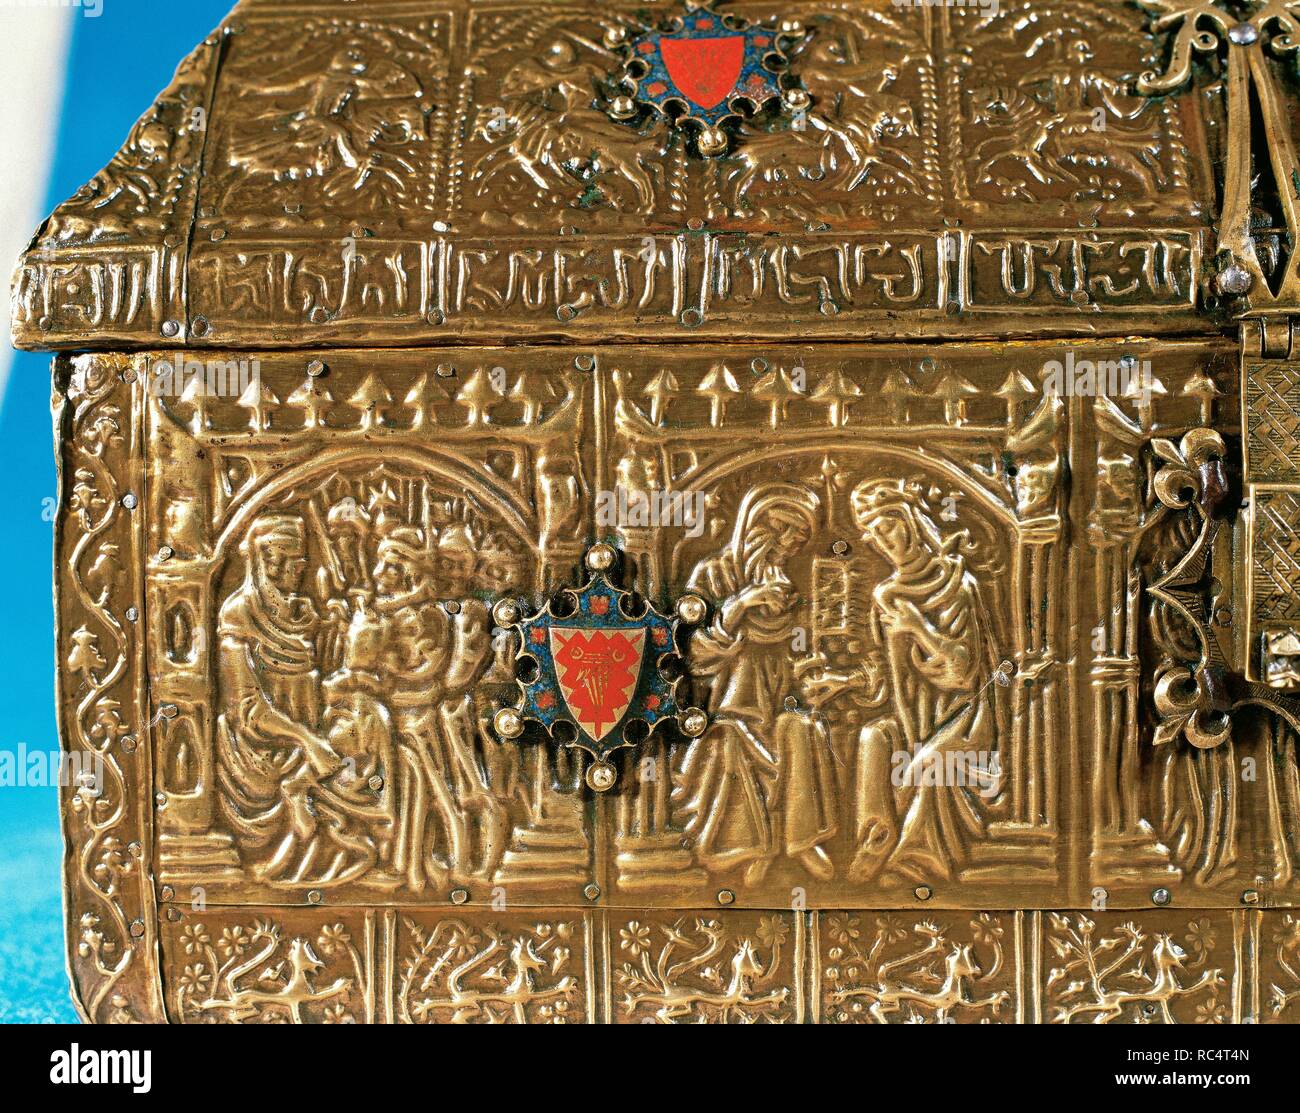 Truhe Messing eingeprägt auf Holz- Blatt und Bronze und Emaille ergänzt. Hispanic-Arab Werkstatt. 14. Jahrhundert. Alcover, Spanien. Stockfoto